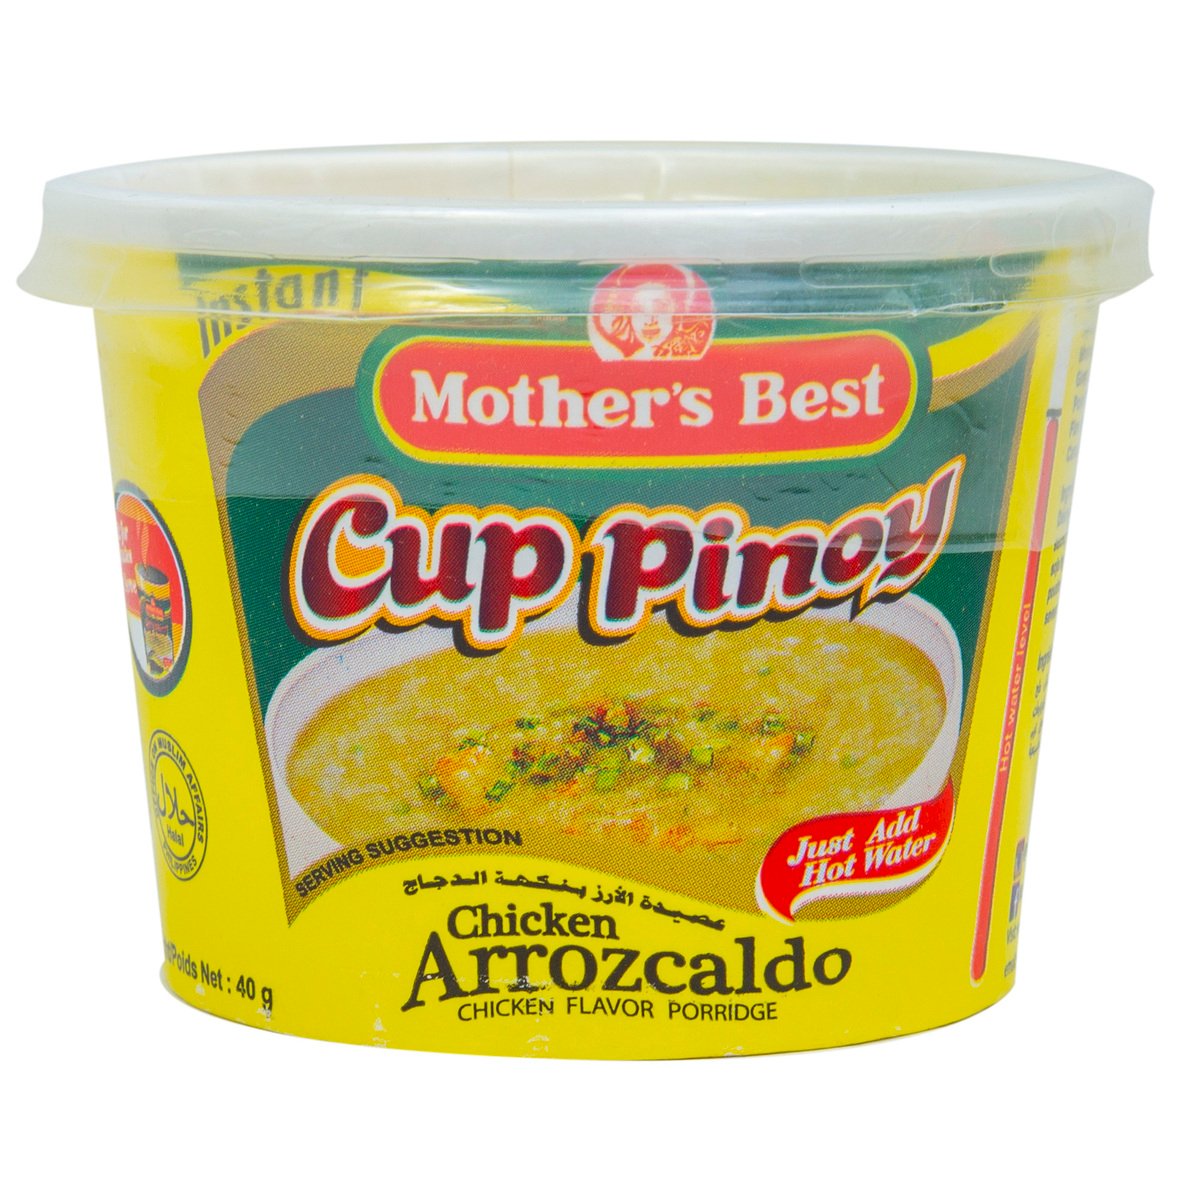 Mother's Best Pinoy Arrozcaldo Chicken Flavor Porridge 40 g